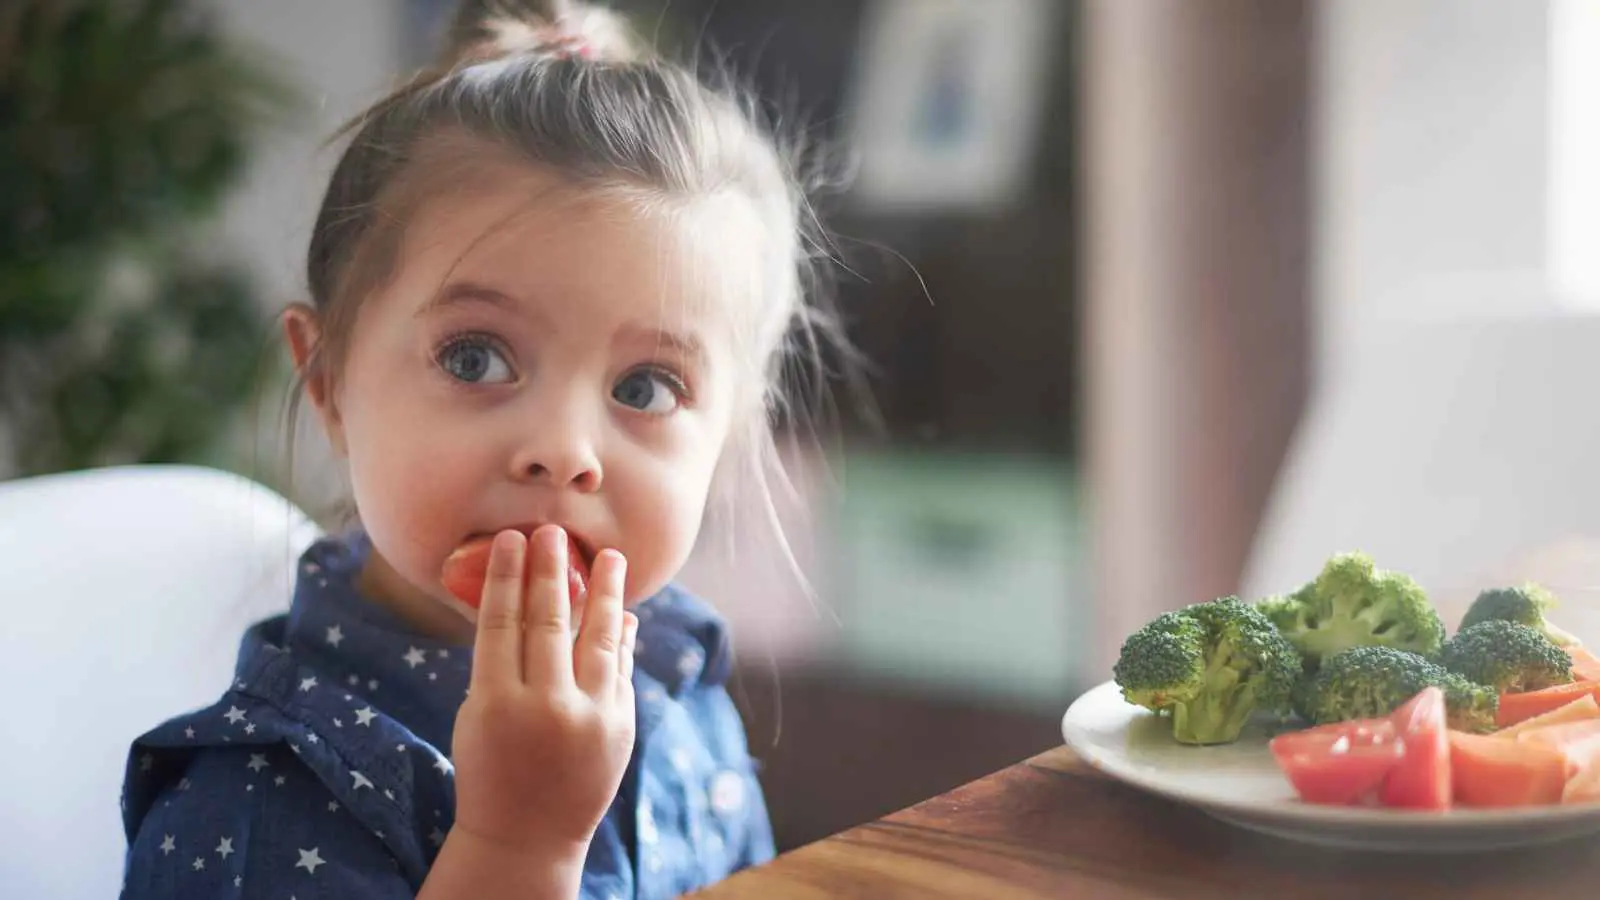 تناول هذه الأطعمة في الطفولة يزيد "حدة الدماغ" في السبعينيات